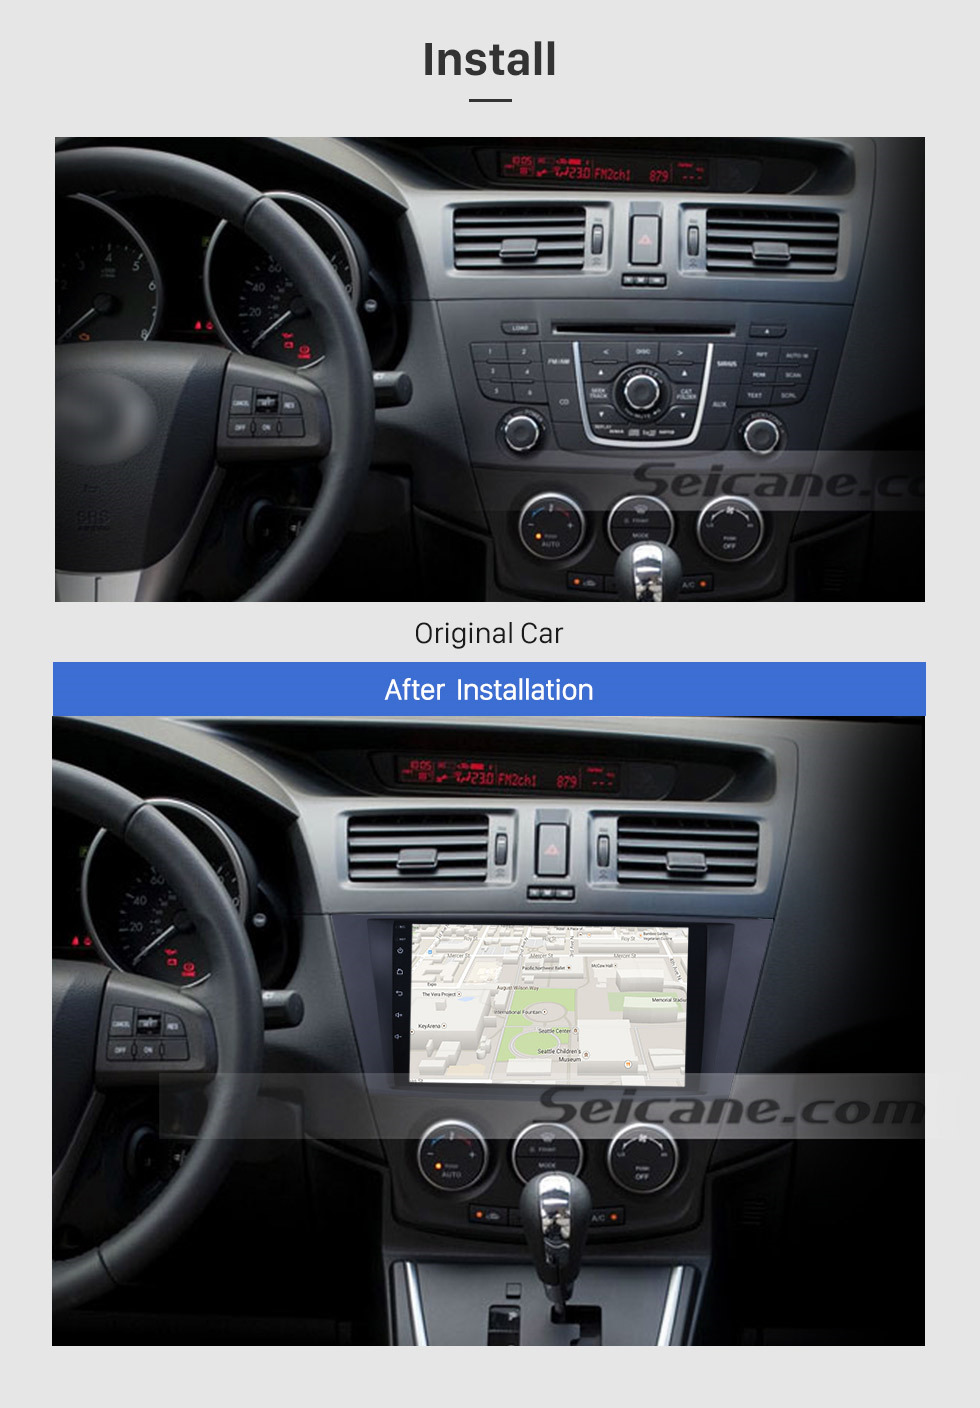 Seicane Seicane 9 polegadas Android 8.1 Sistema de Navegação GPS para 2009 2010 2011 2012 Mazda 5 com Rádio HD 1024 * 600 Suporte a tela de toque DVR TV Vídeo WIFI OBD2 Bluetooth USB Backup Camera Controle de volante Espelho link